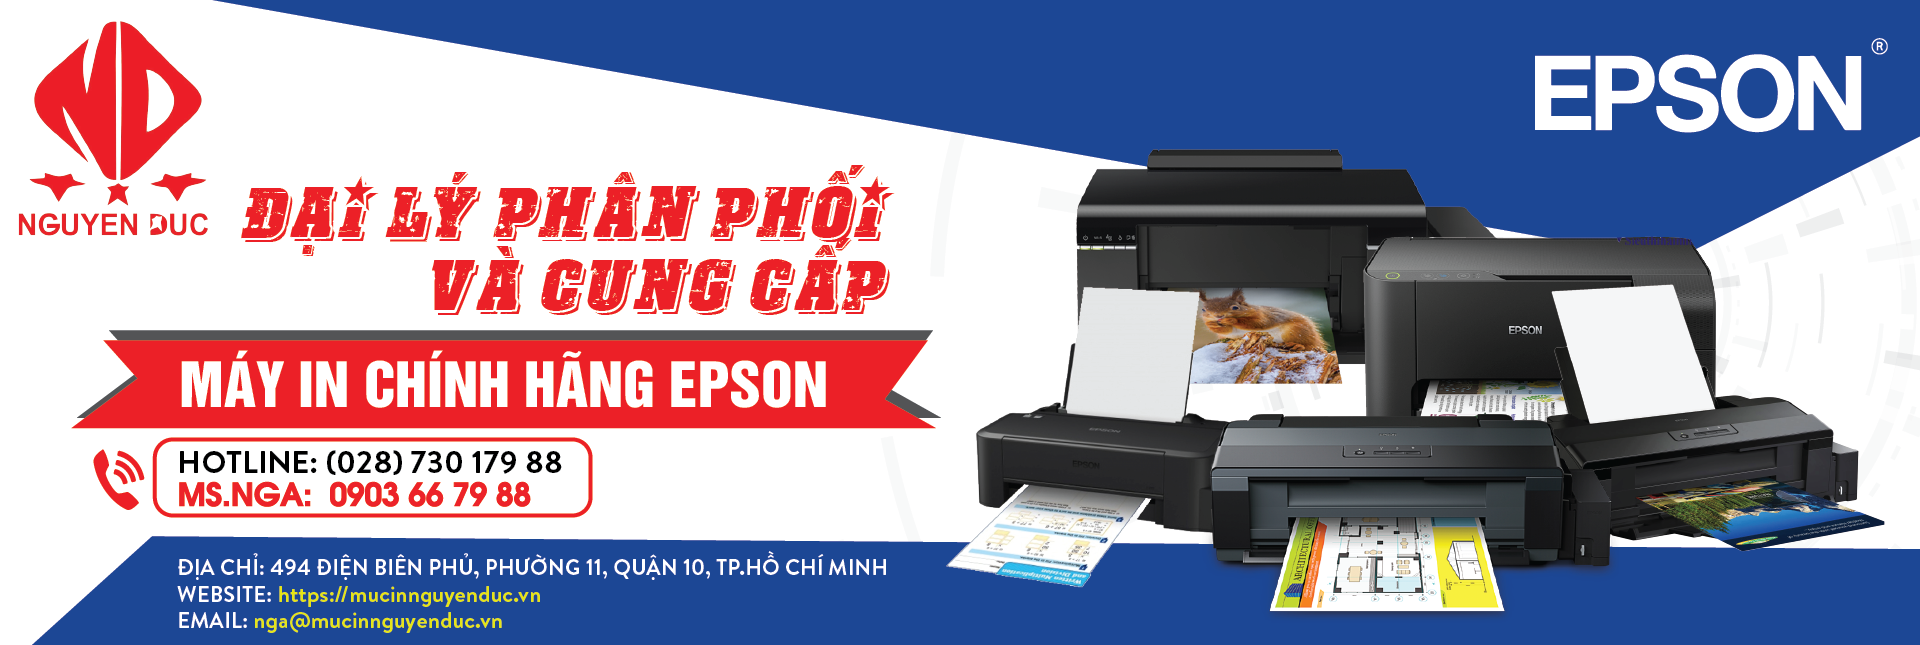 Đại lí phân phối máy in epson LQ-310 - chính hãng, giao hàng và lắp đặt tại quận 4, thành phố Hồ Chí Minh